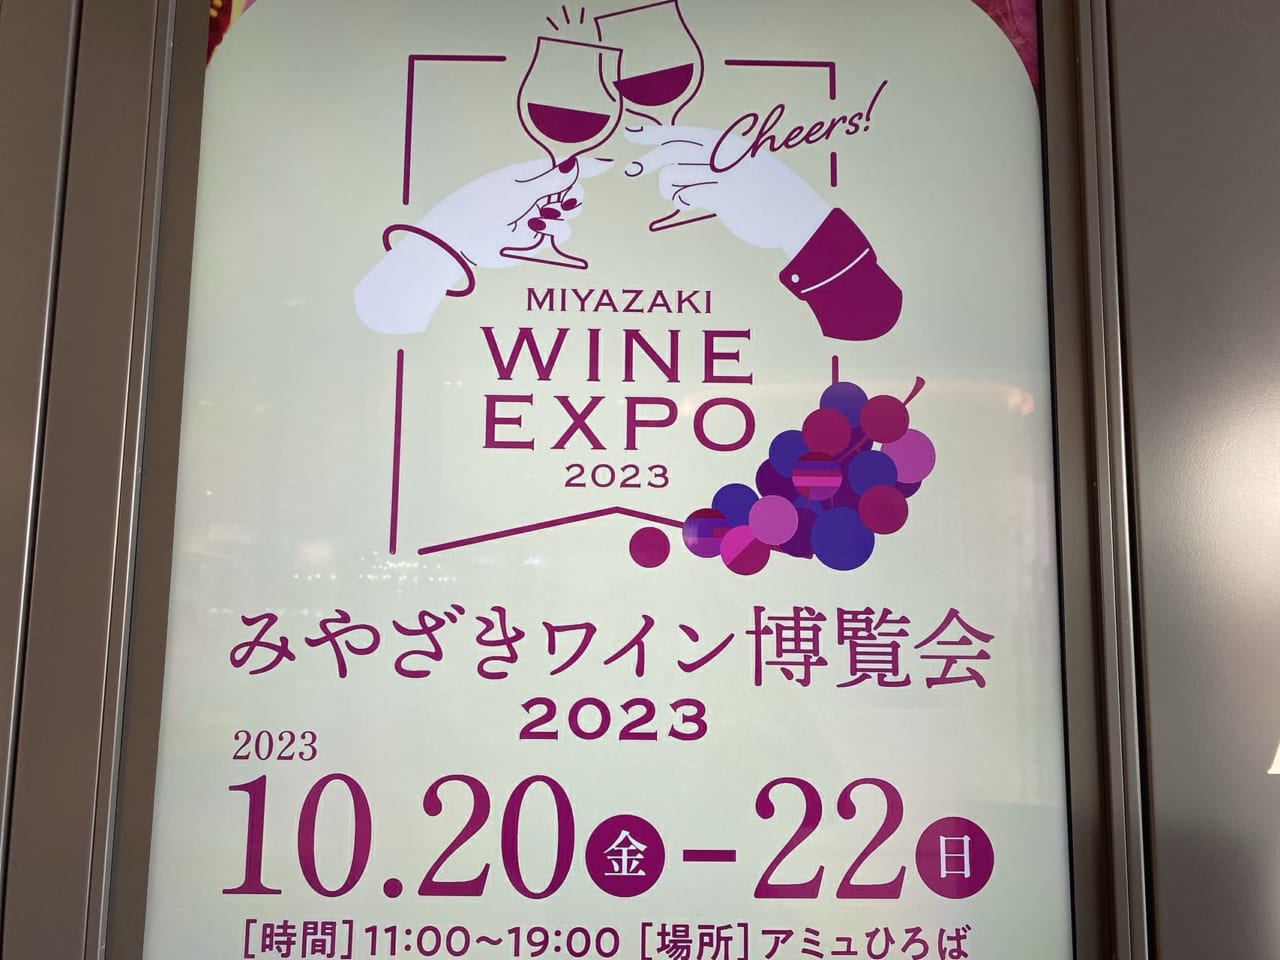 宮崎市 アミュプラザみやざき 期間限定イベント みやざきワイン博覧会2023 画像4